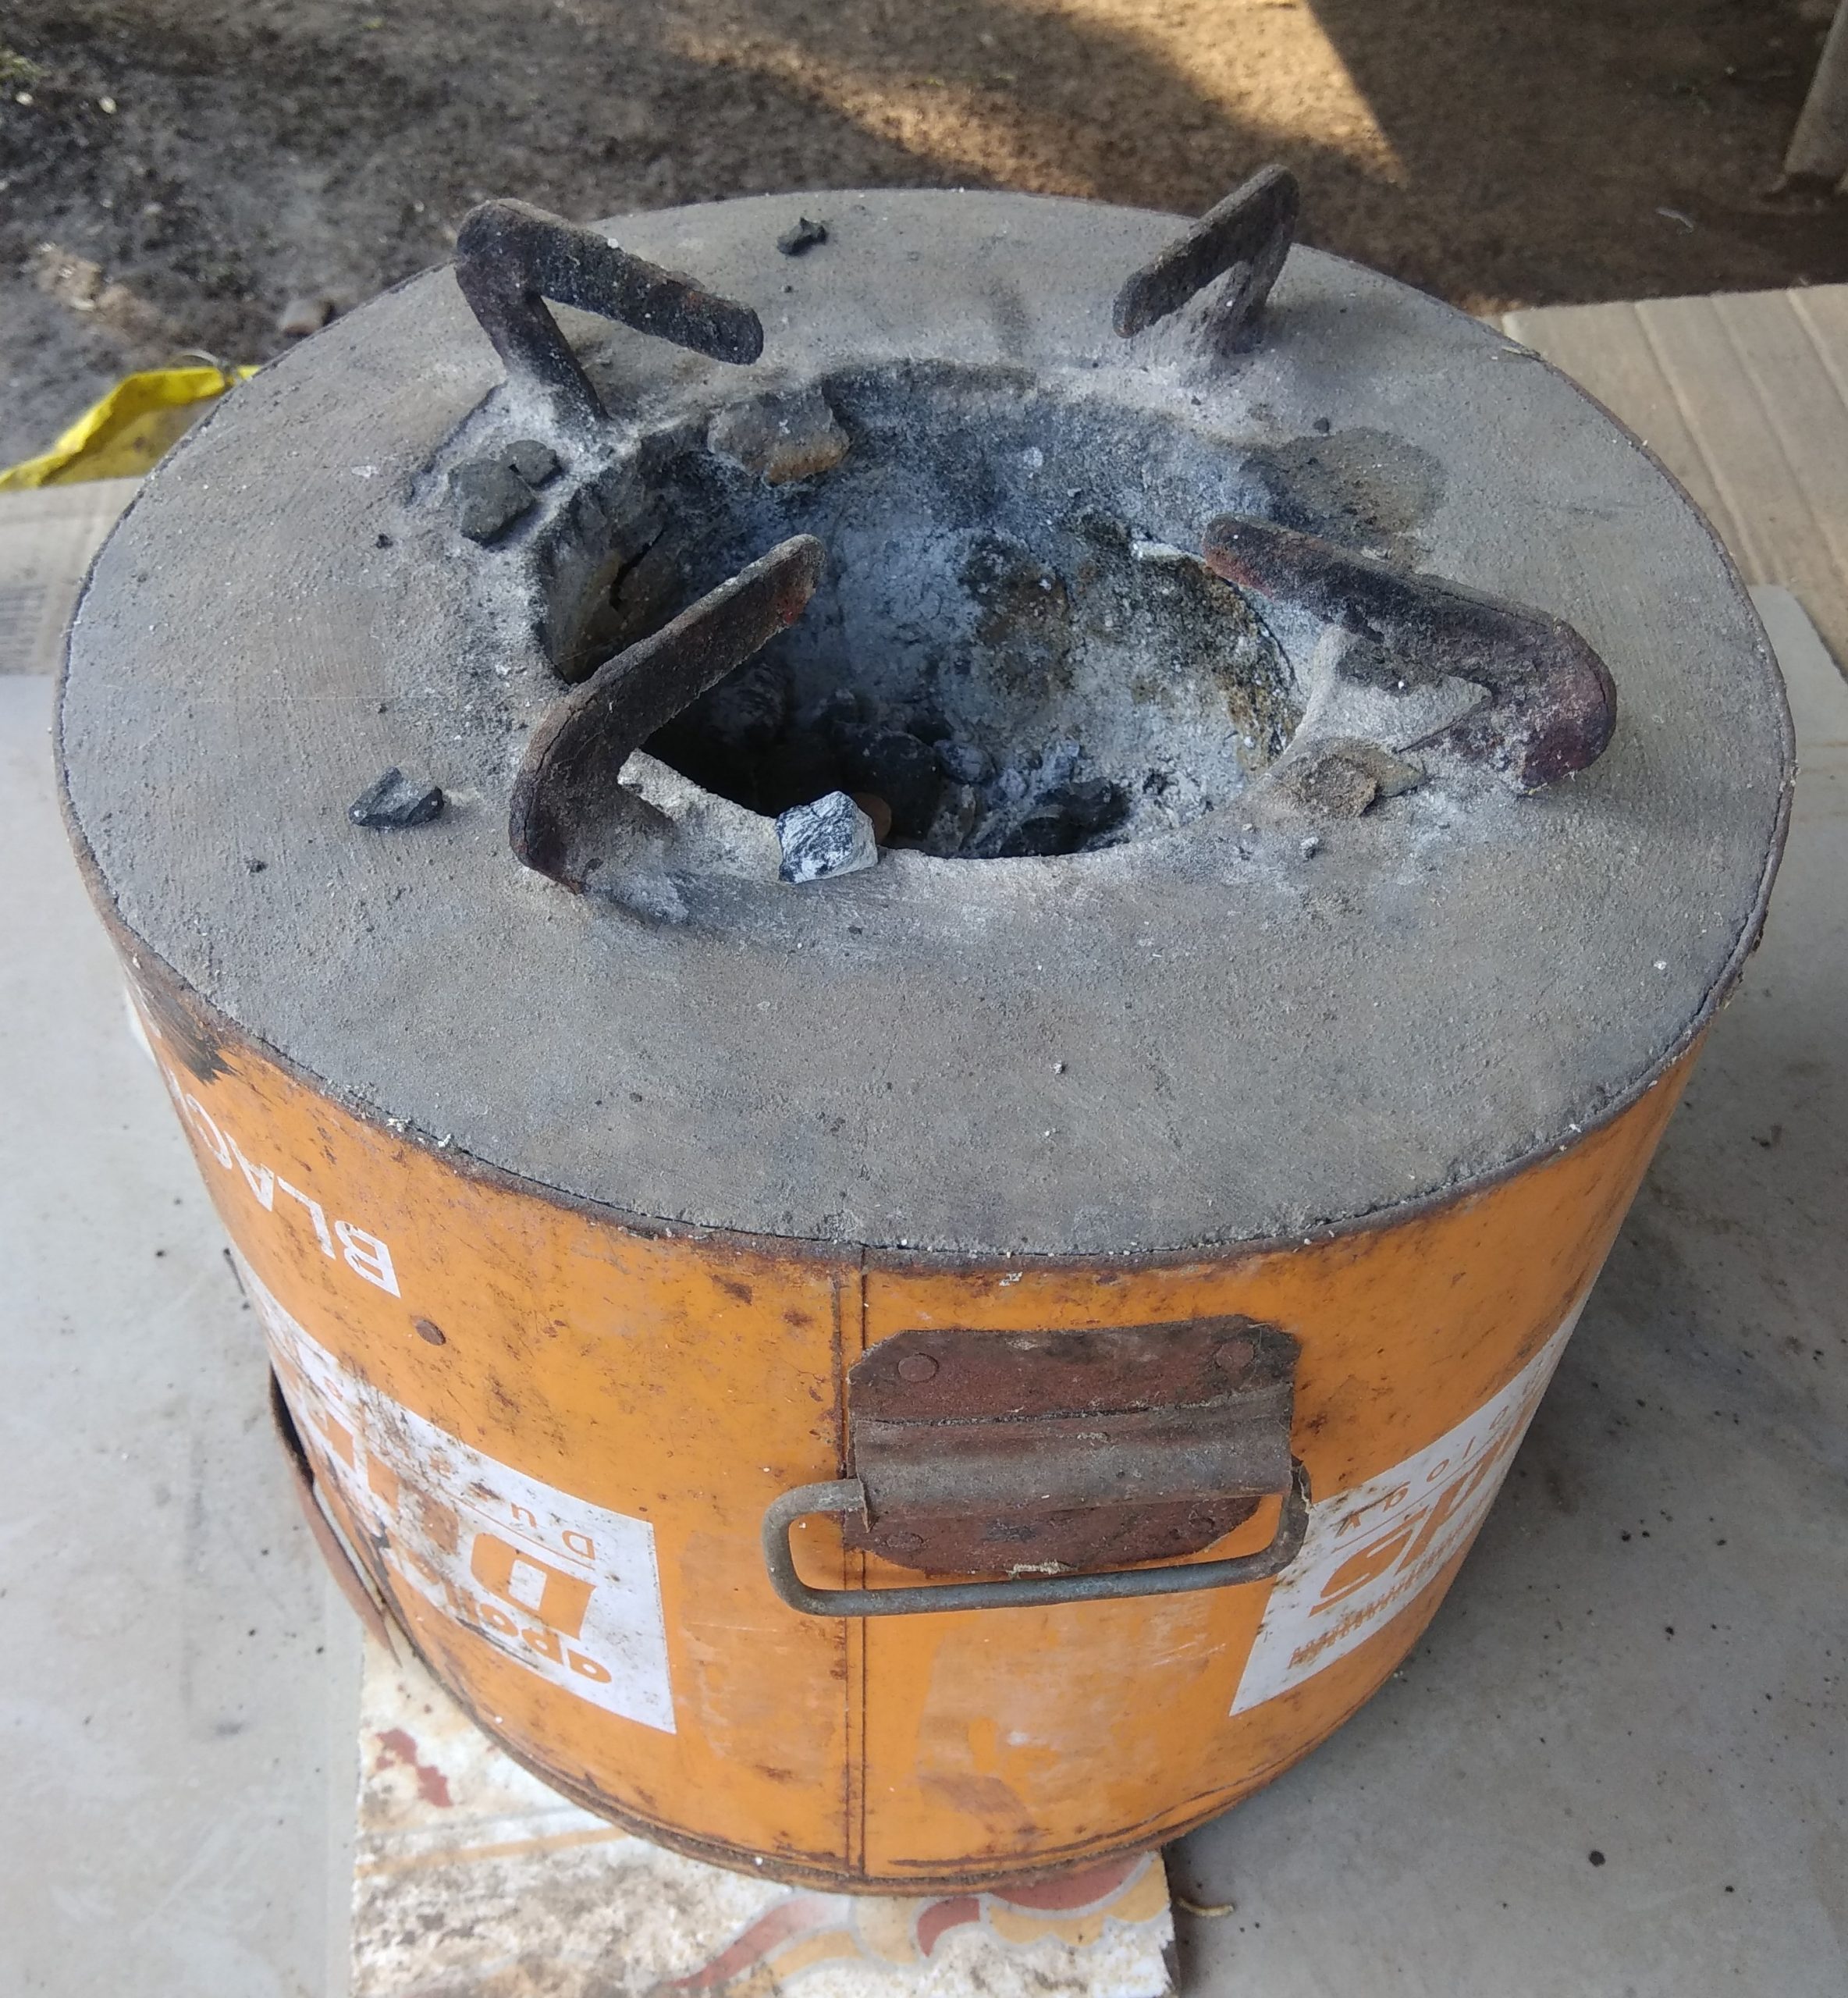 A coal stove